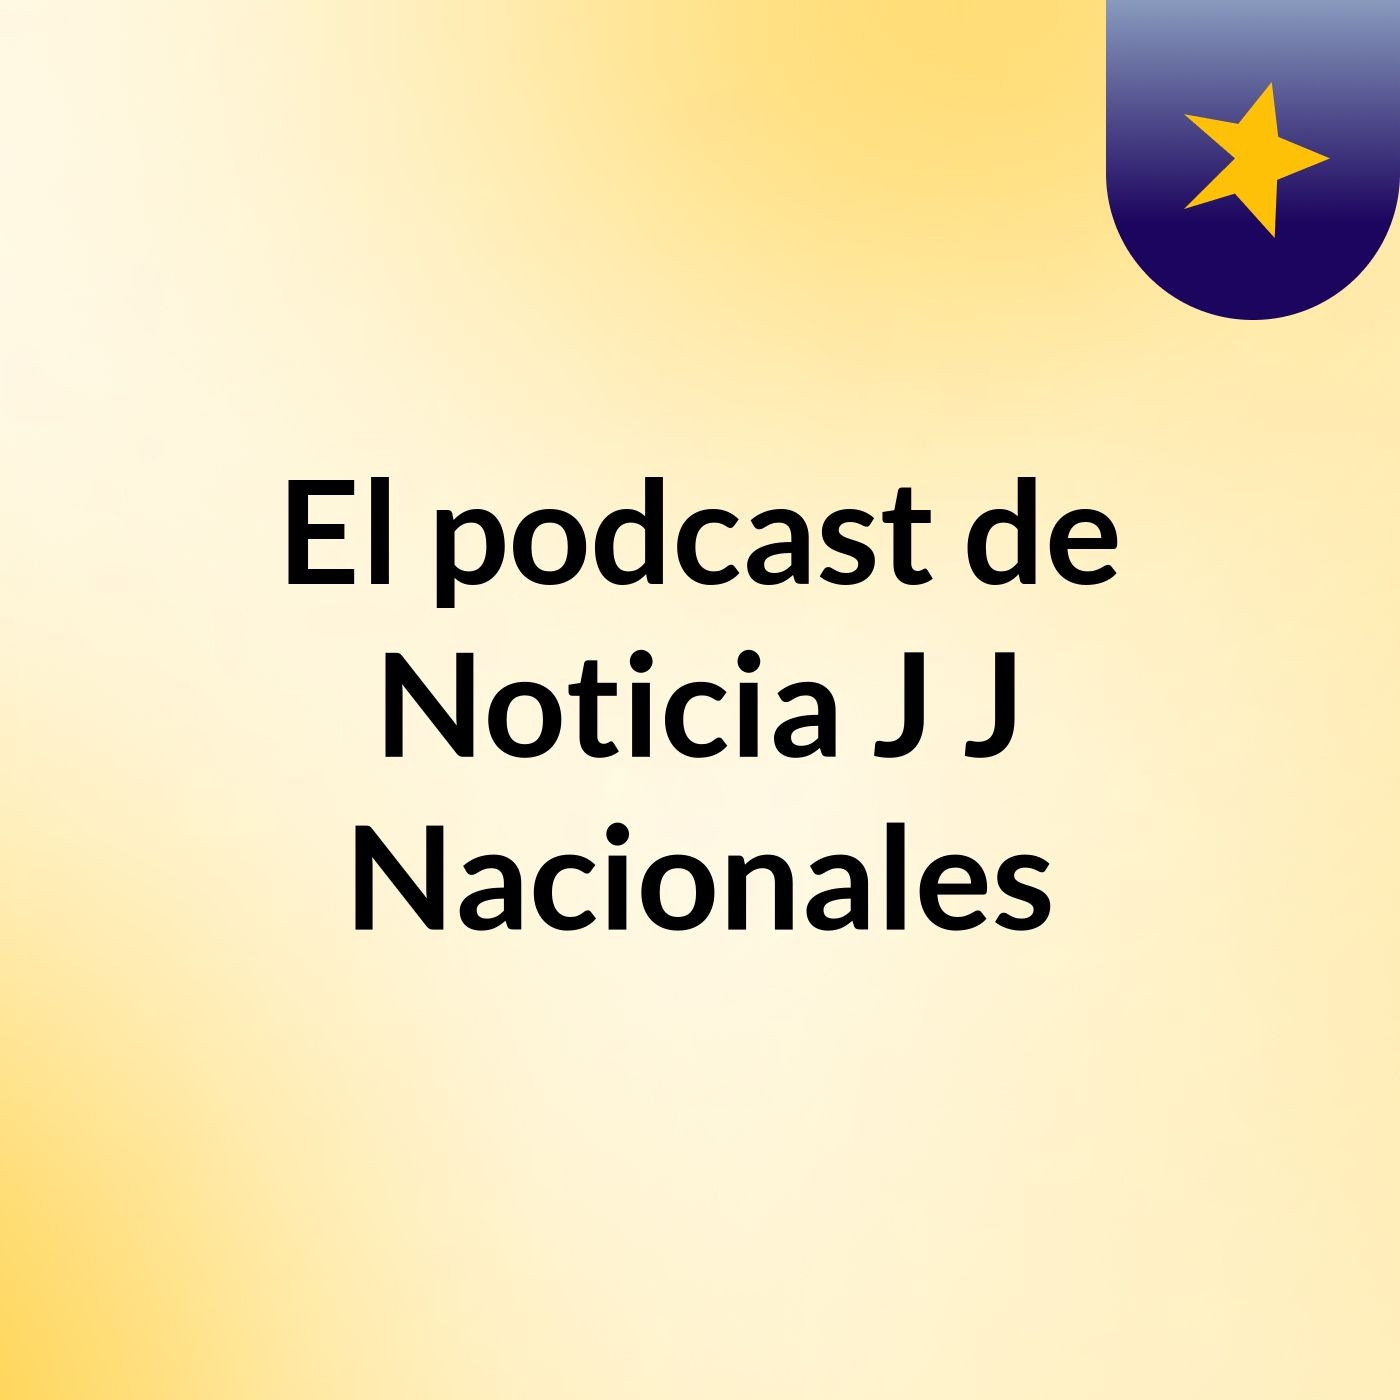 Episodio 5 - El podcast de Noticia J J Nacionales